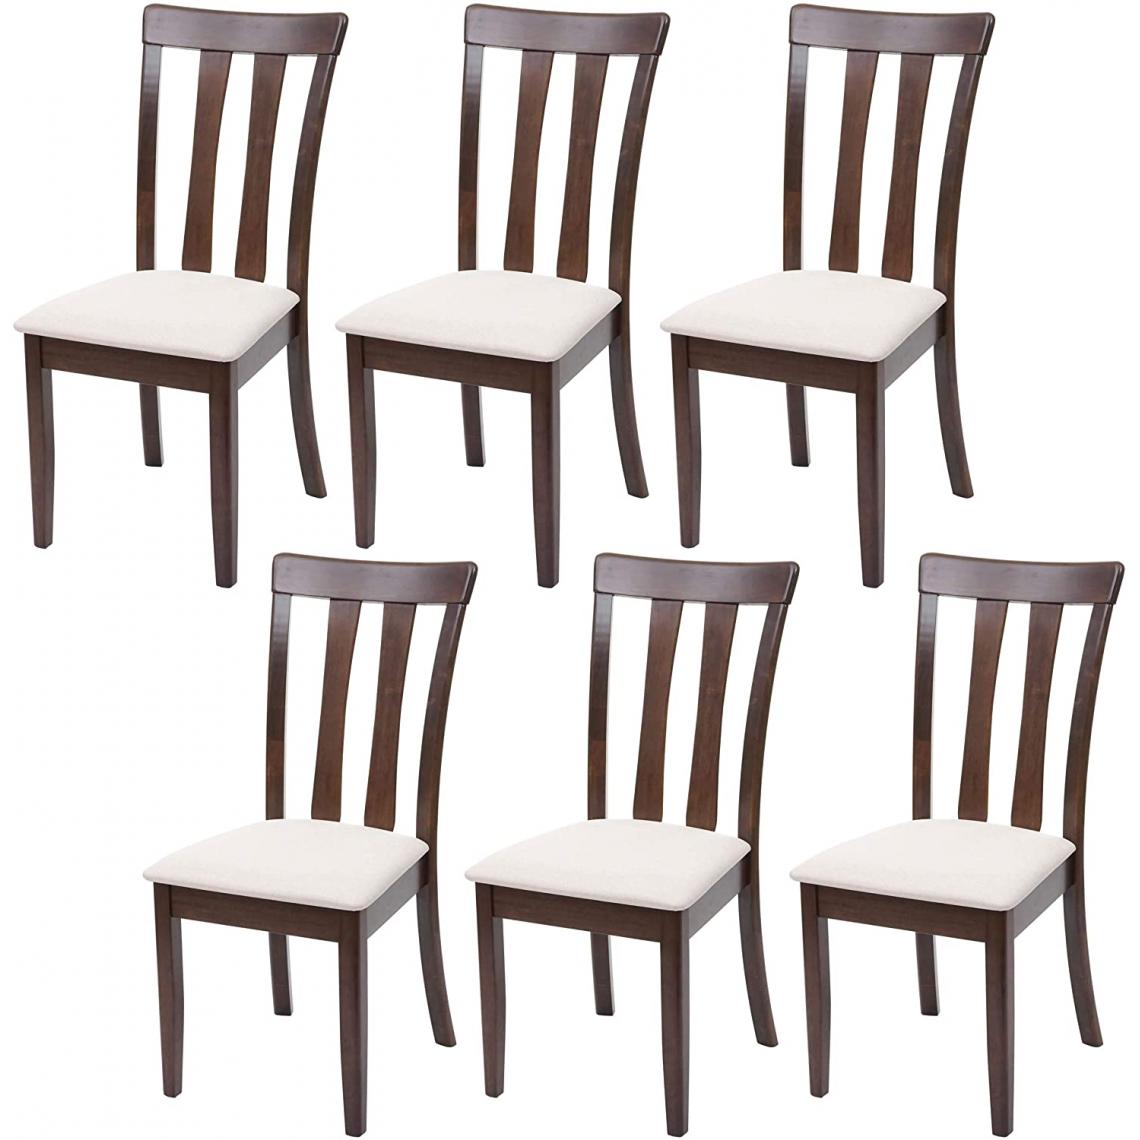 Decoshop26 - Lot de 6 chaises de salle à manger en bois massif marron foncé et assise en tissu crème CDS04664 - Chaises